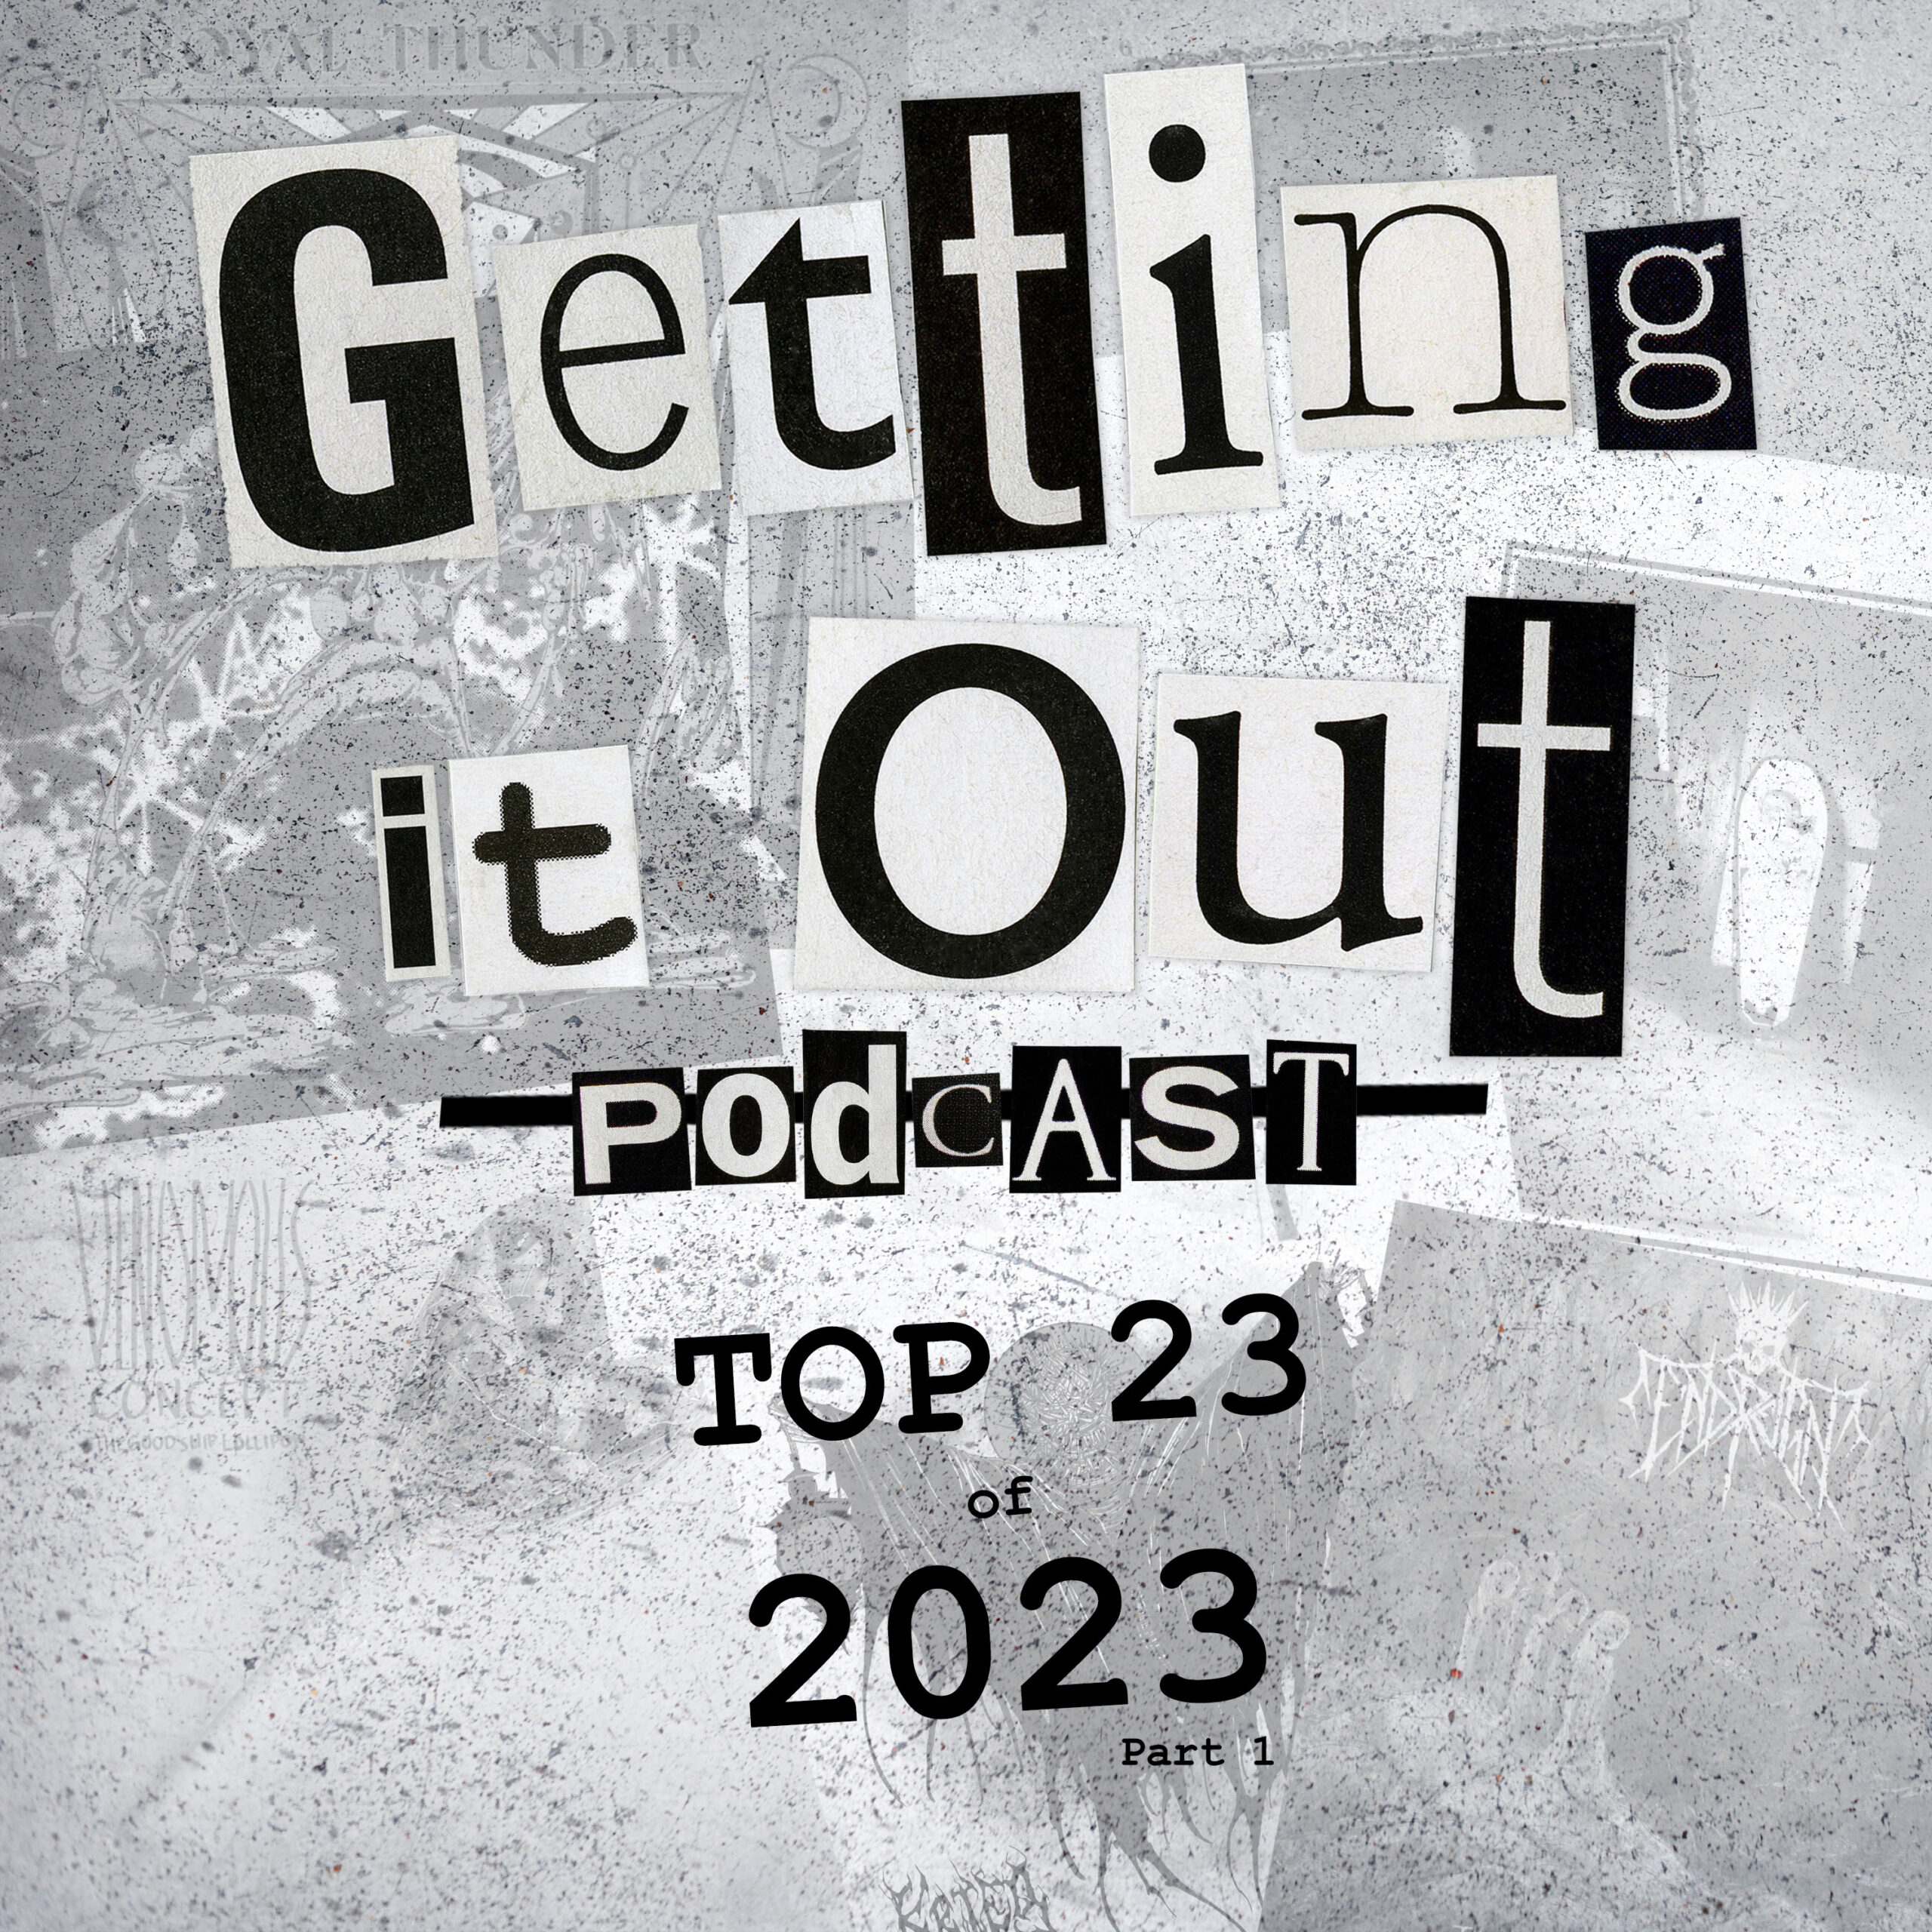 Top 23 of 2023 - Part 1